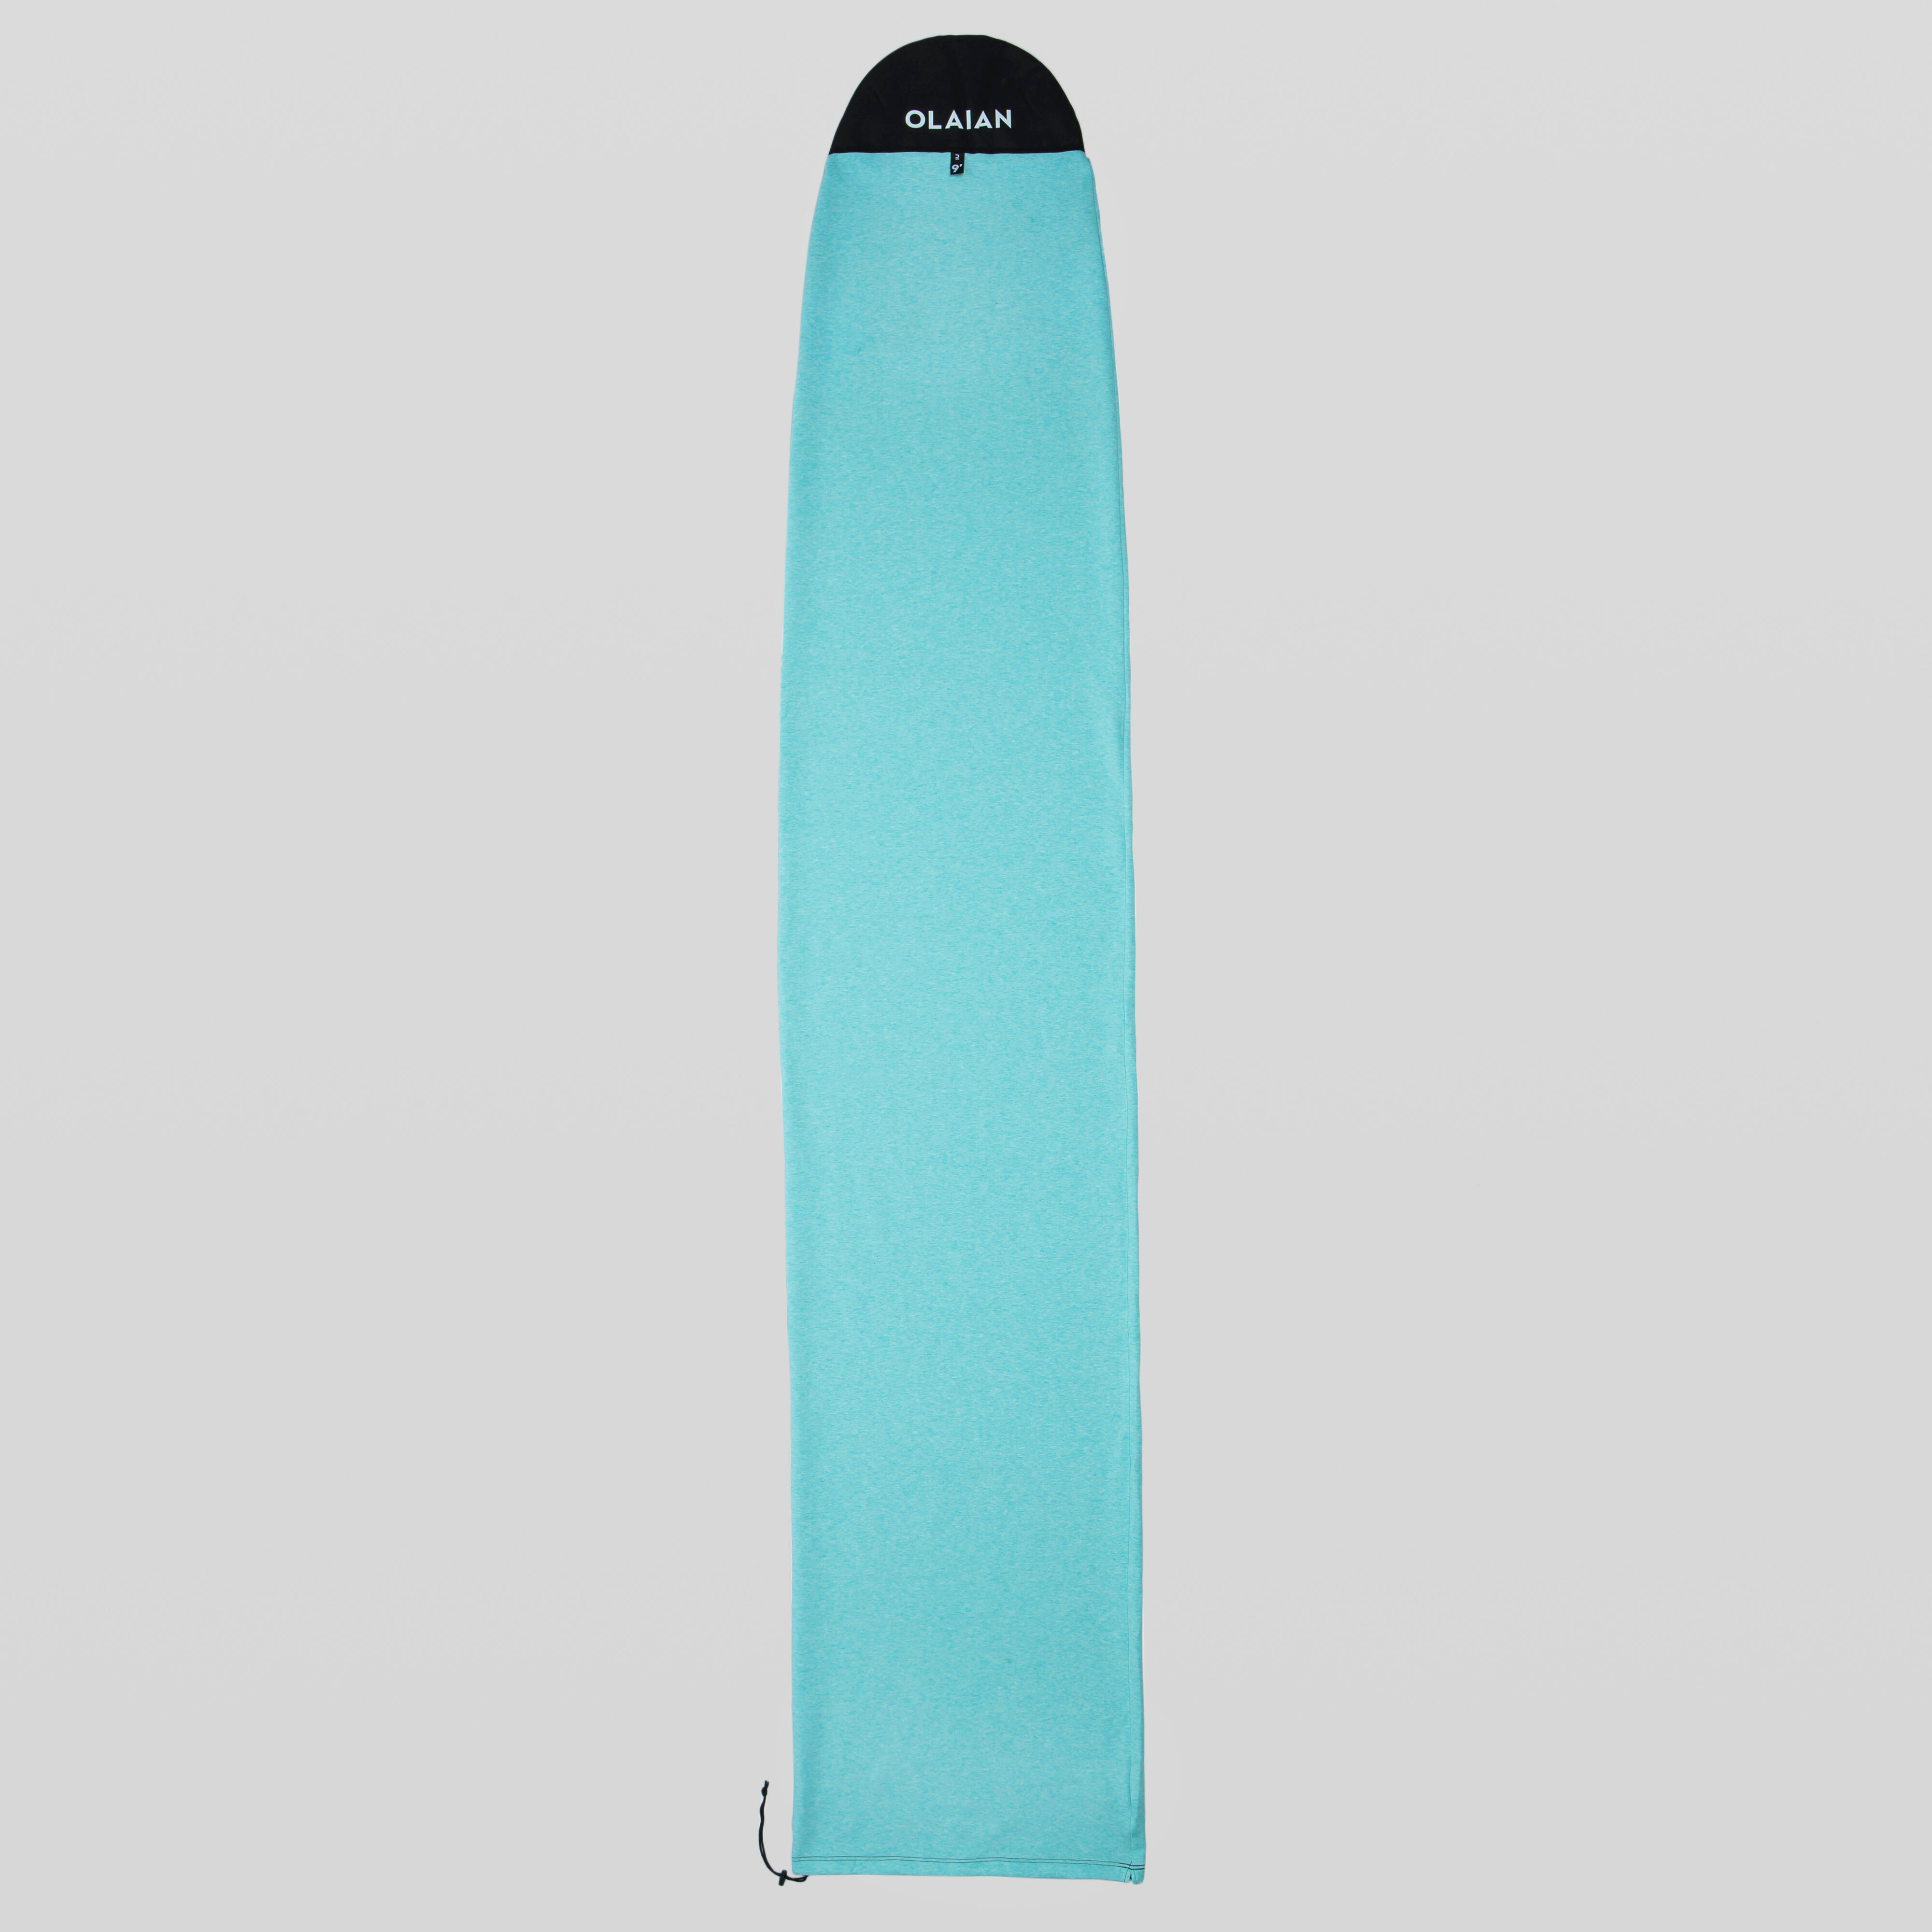 OLAIAN Boardbag für Surfboard maximale Größe 9'2'' EINHEITSGRÖSSE